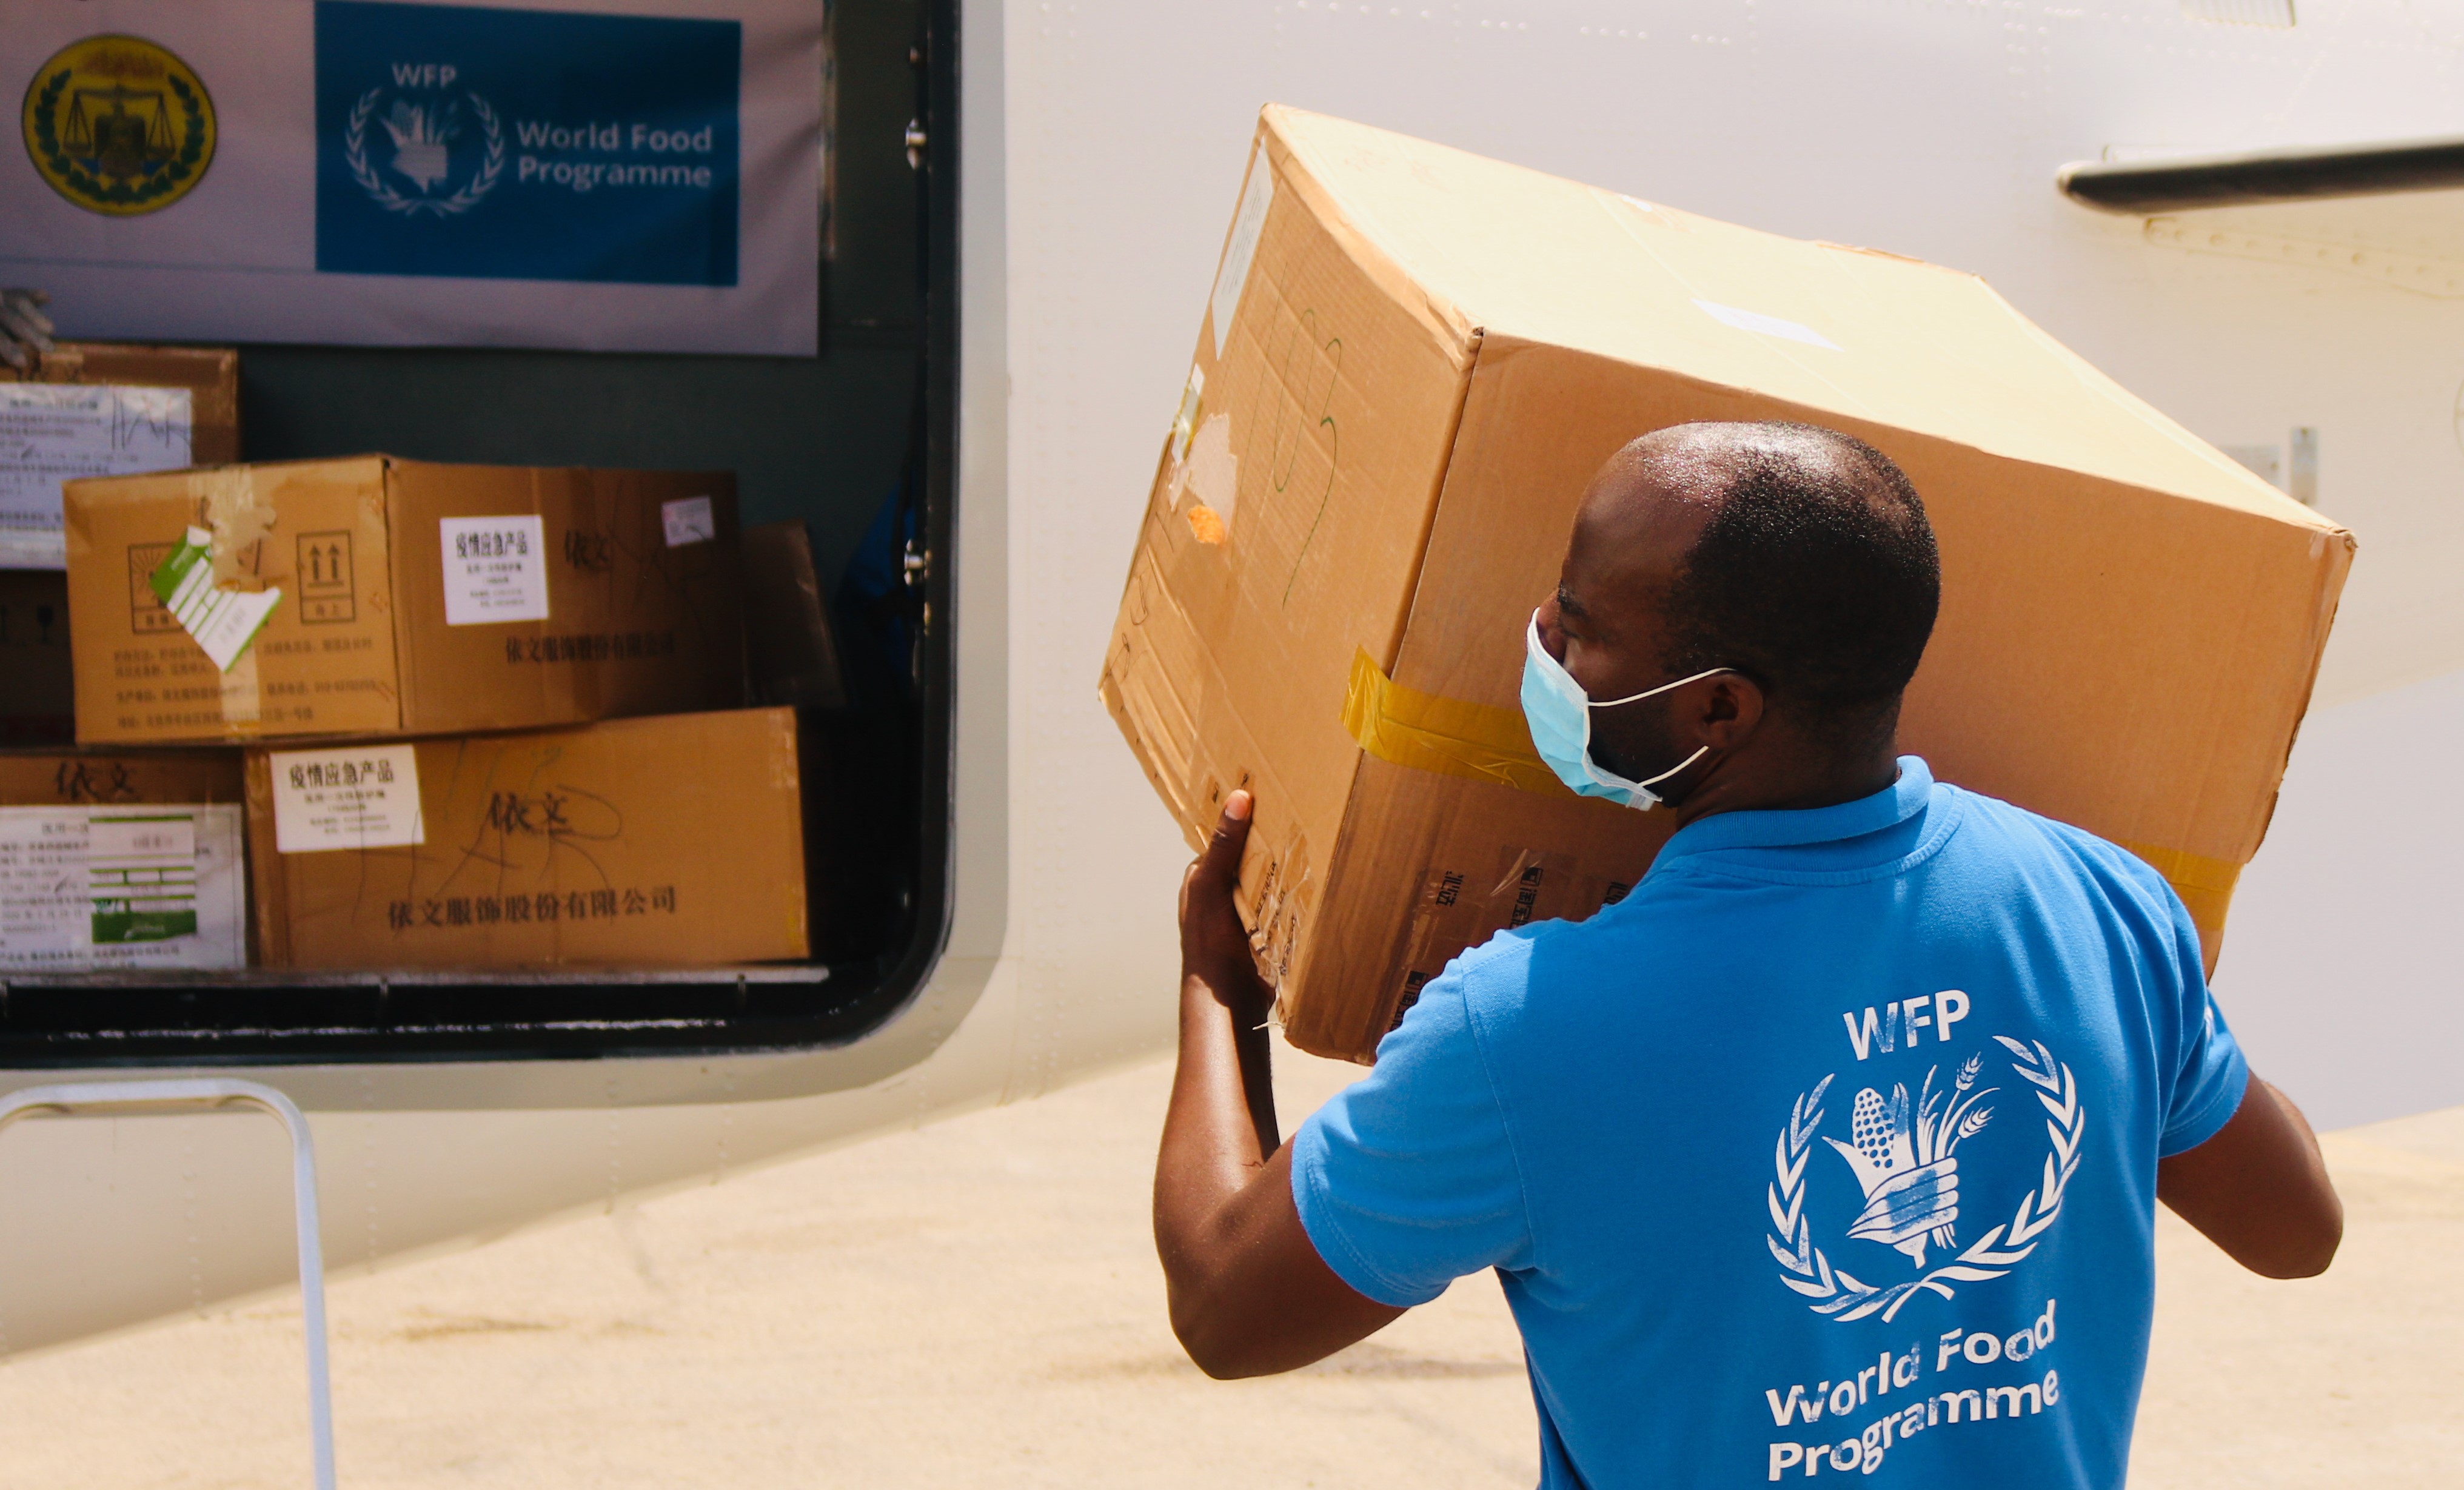 ソマリア保健省の要請に応じ、国連WFPは運航する国連人道支援航空サービス（UNHAS）を通じて個人用防護具（マスク、使い捨て衣服、フェイスシールド）を3月末に空輸しました。（3月27日撮影）(c)WFP/Jama Hassan